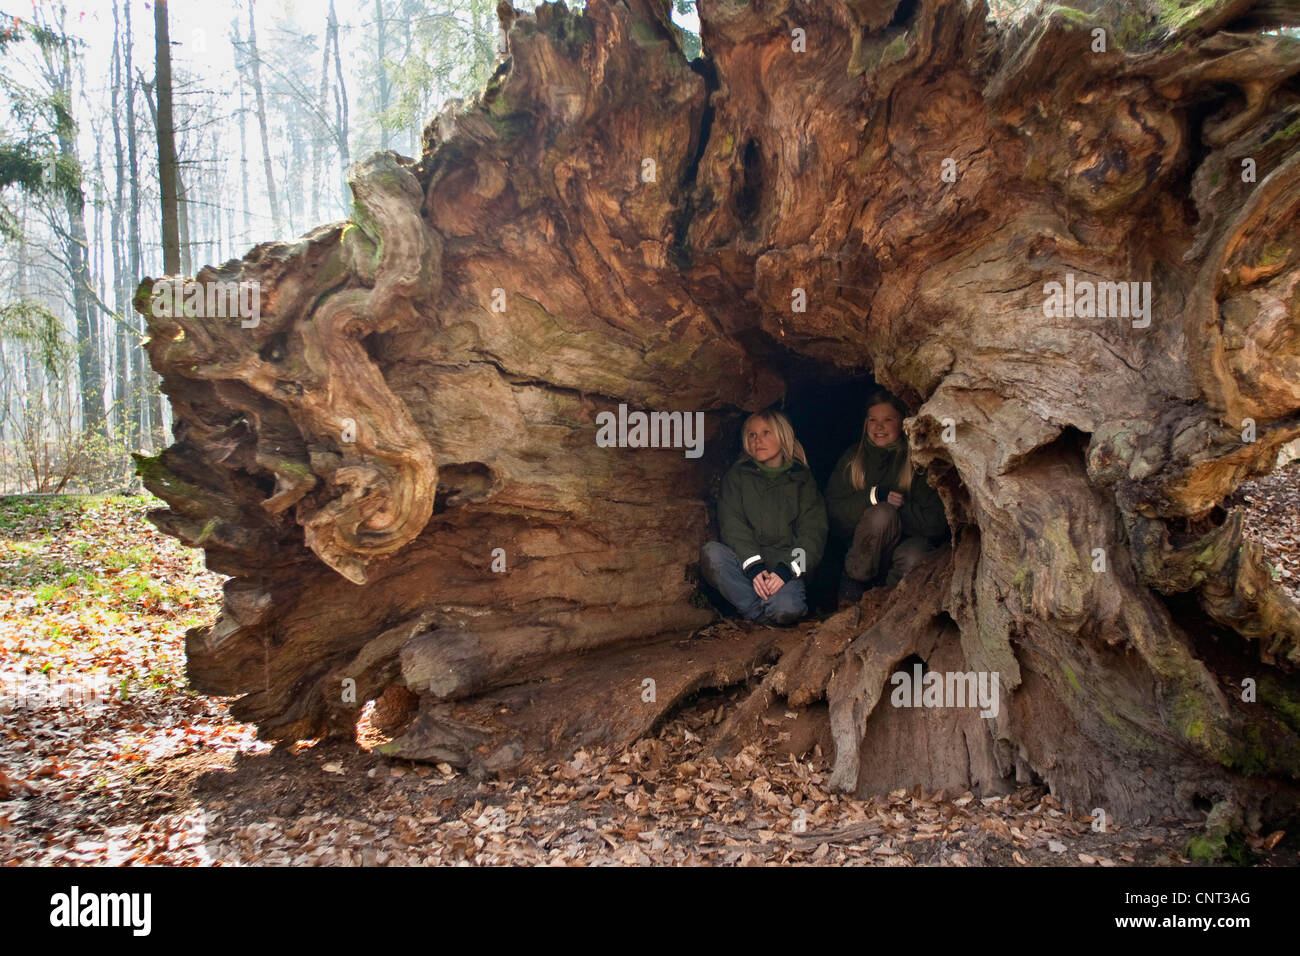 Deux enfants assis dans la tige creuse d'un vieux chêne, immense et culbute, Solling, ALLEMAGNE, Basse-Saxe Banque D'Images